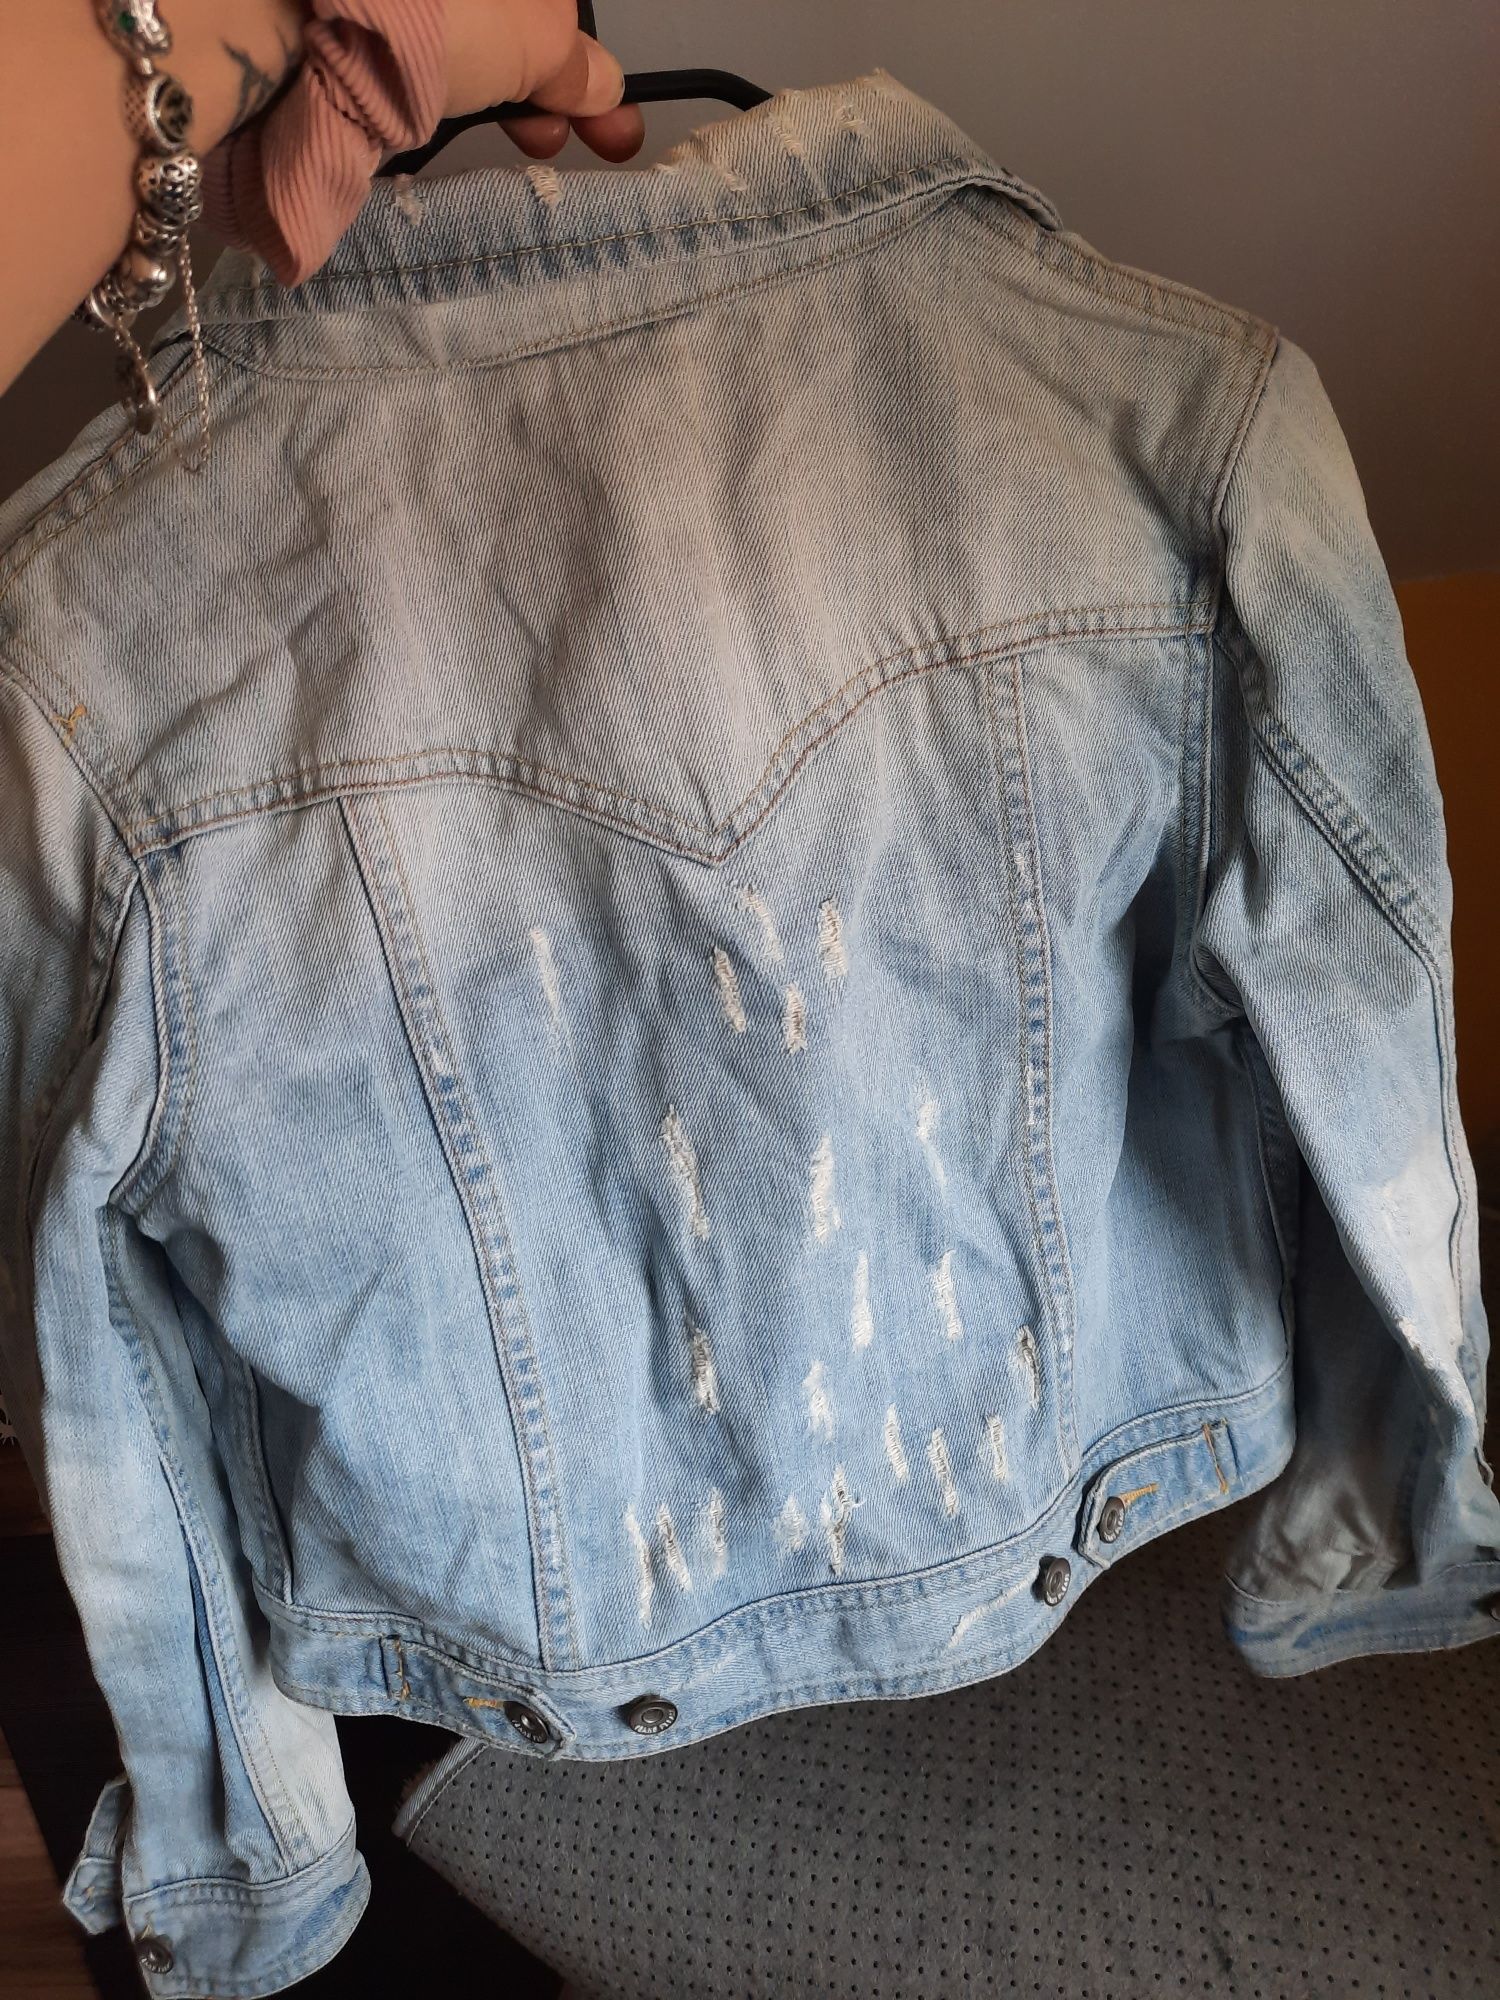 Katana kurtka jeansowa z przetarciami, dziurami